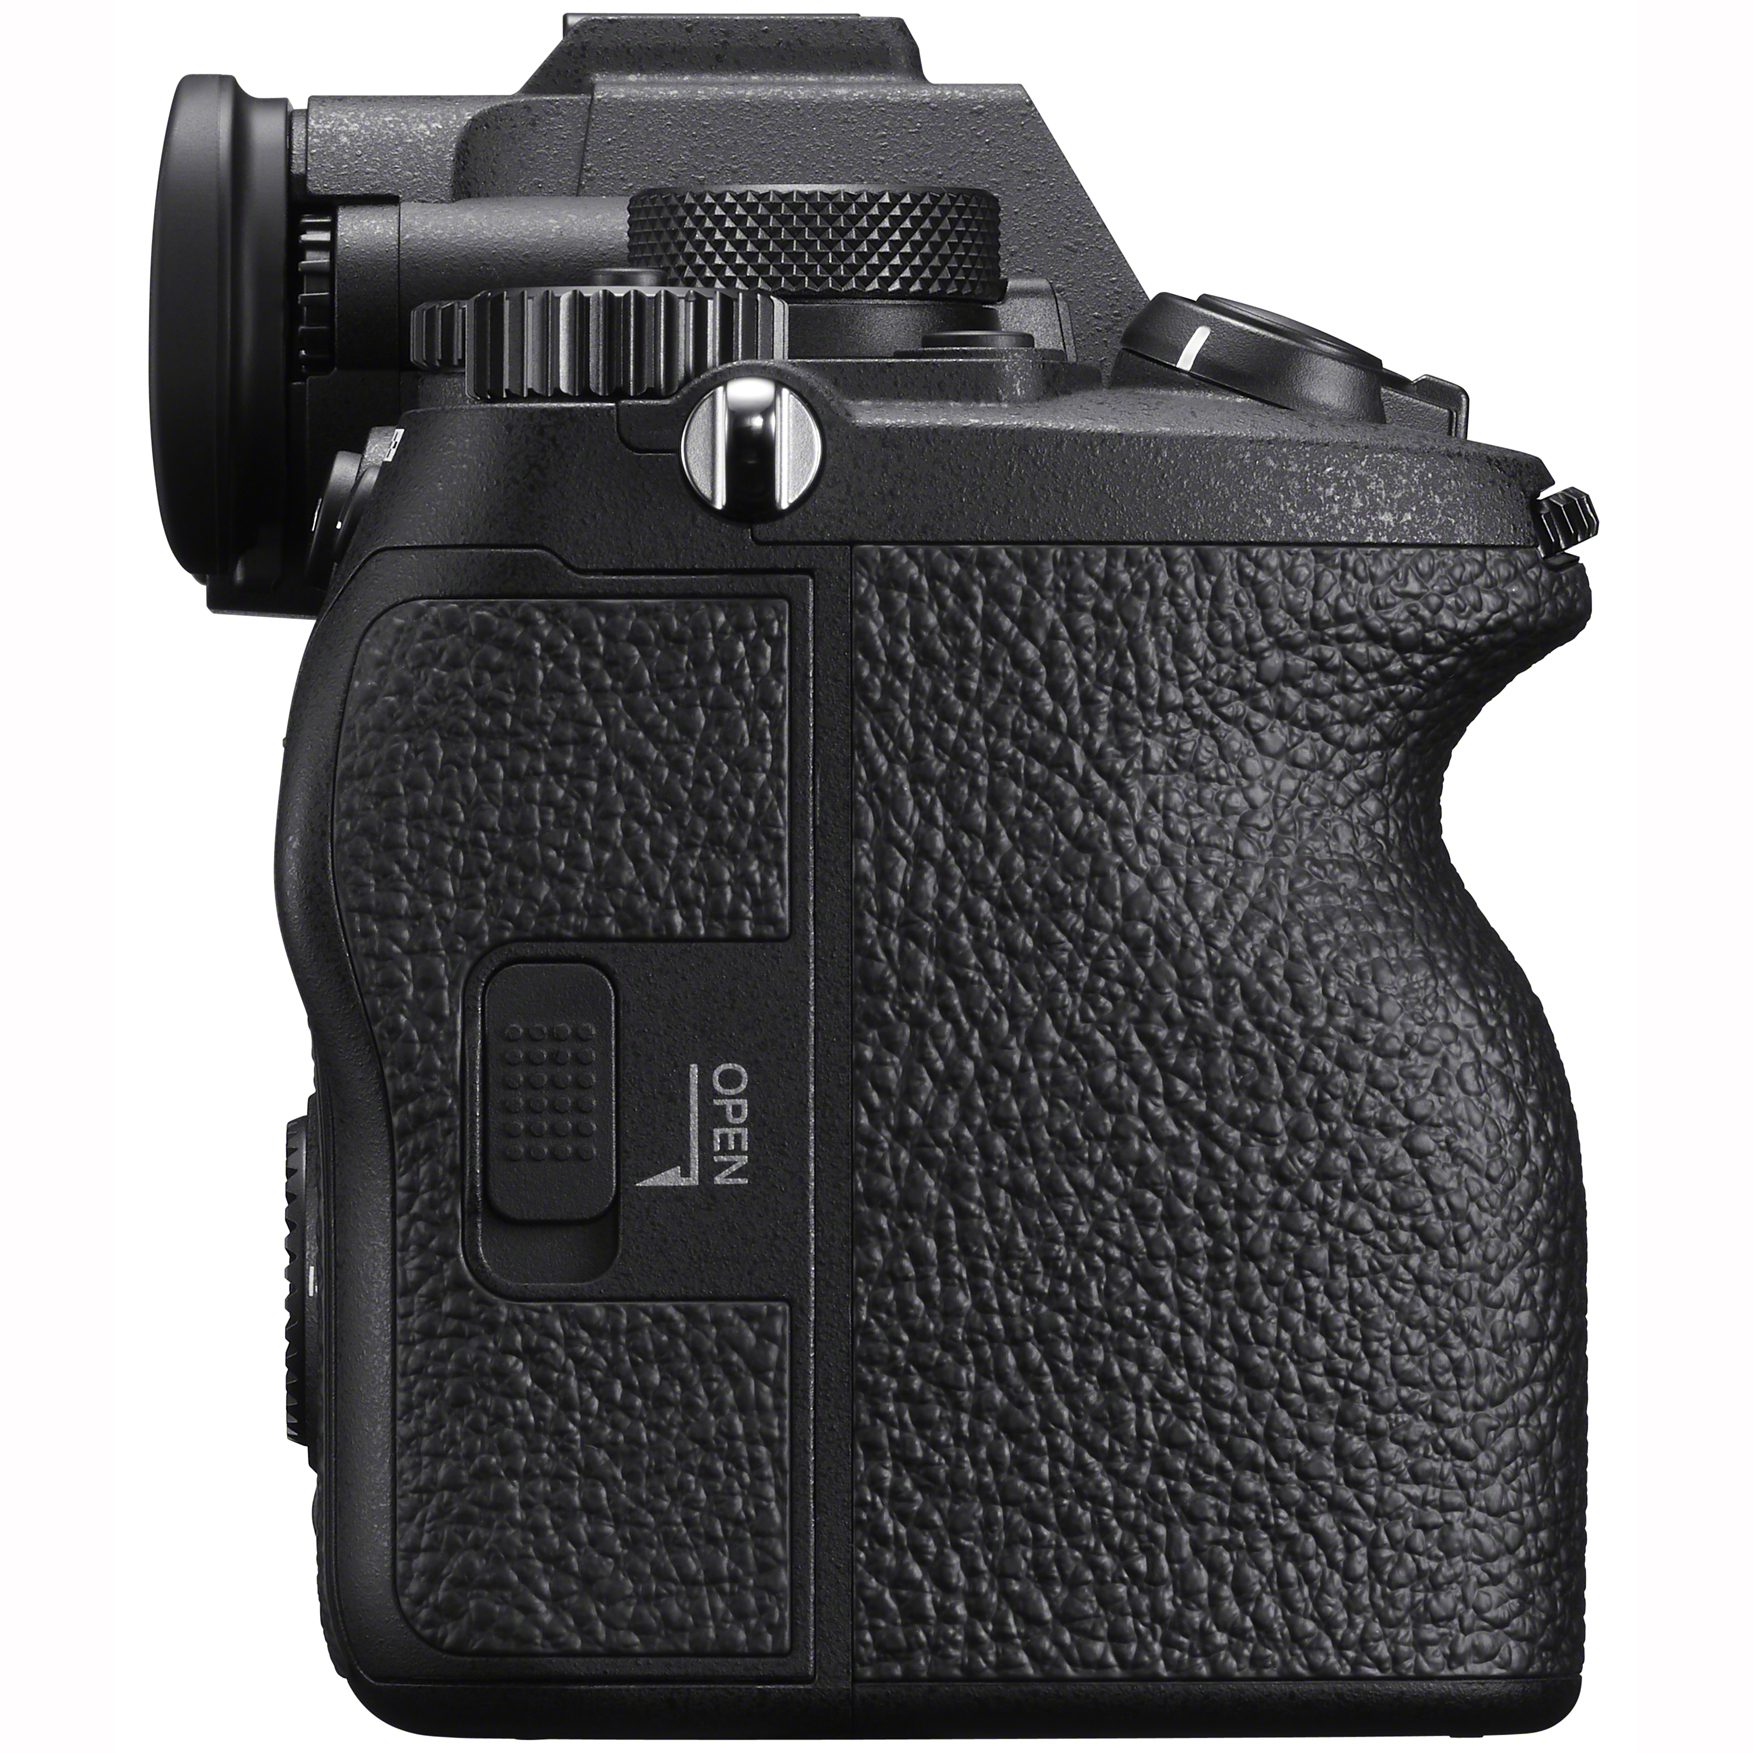 カメラ デジタルカメラ Sony a7 IV Mirrorless Full Frame Camera Body ILCE-7M4 + Pro 